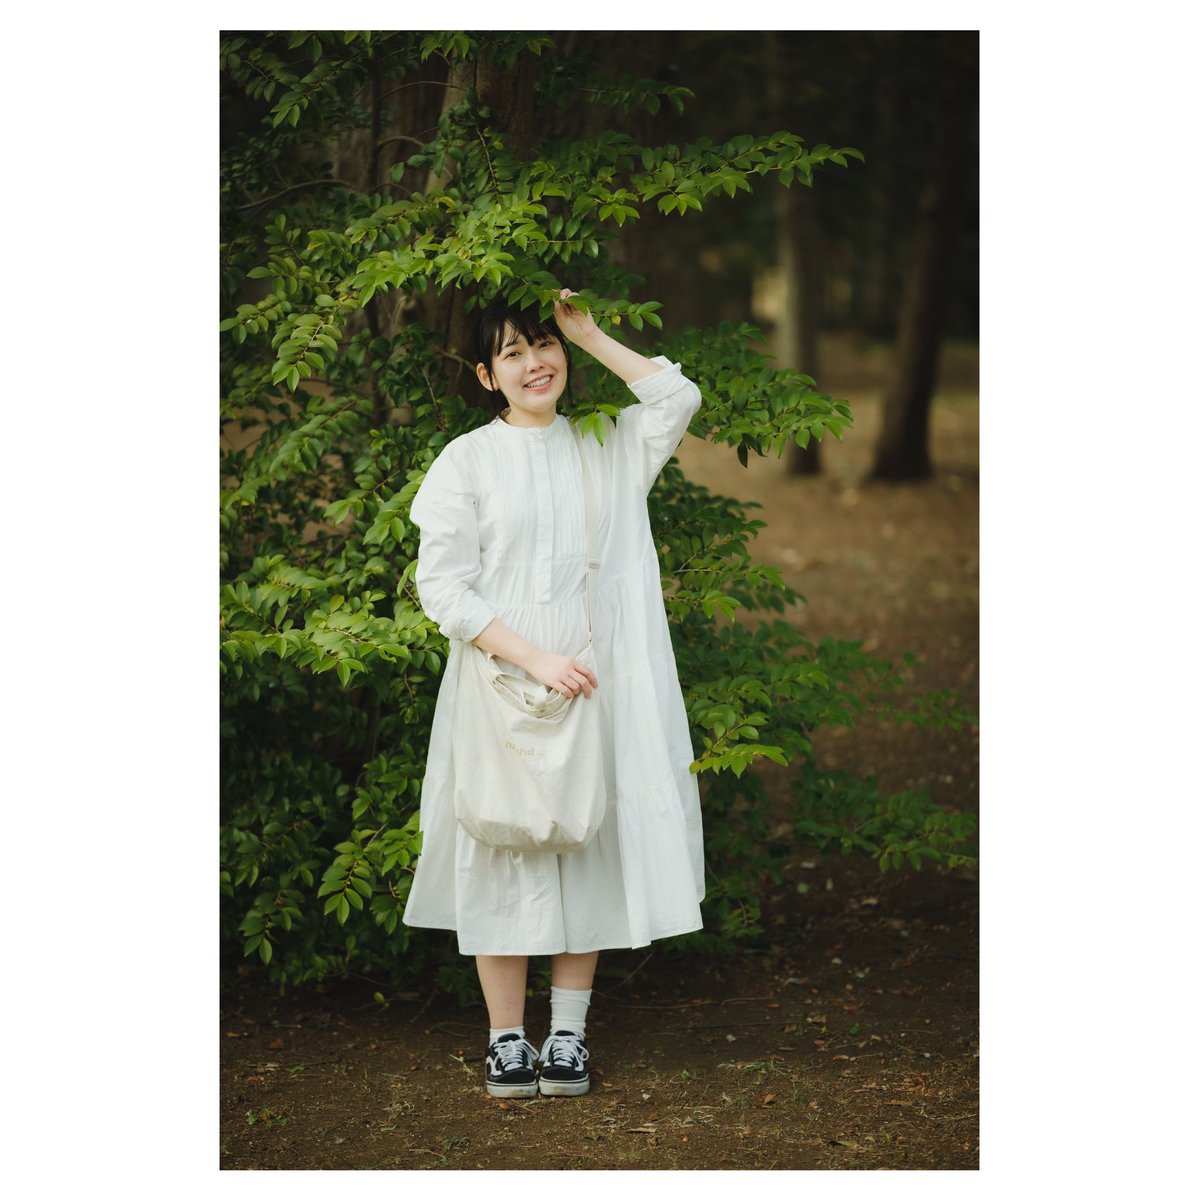 木と私〔ゆい〕 @yukaisan3 #被写体 #ポートレート #photography #portrait #人にはそれぞれ魅力がある